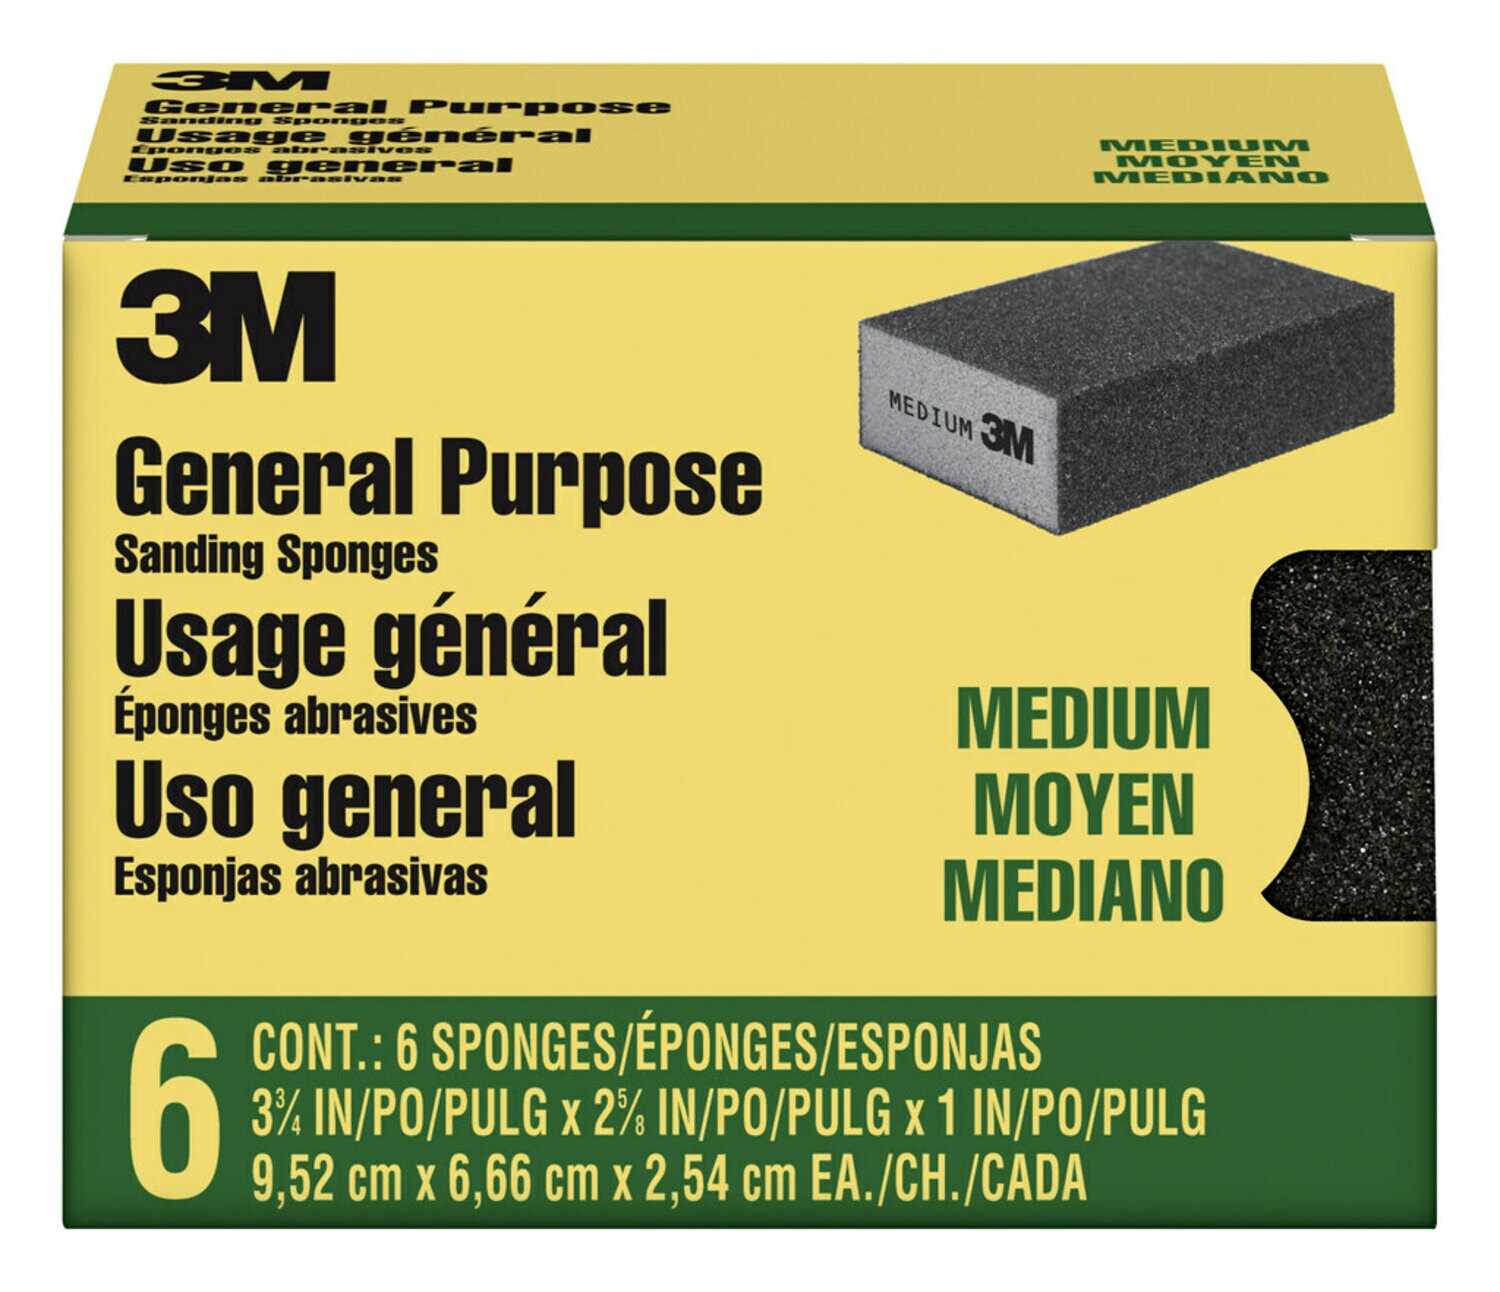 7100173303 - 3M Sanding Sponge CP002-6P-CC, Block,3 3/4 in x 2 5/8 in x 1 in,
Medium, 6-pack, 4 packs/cs